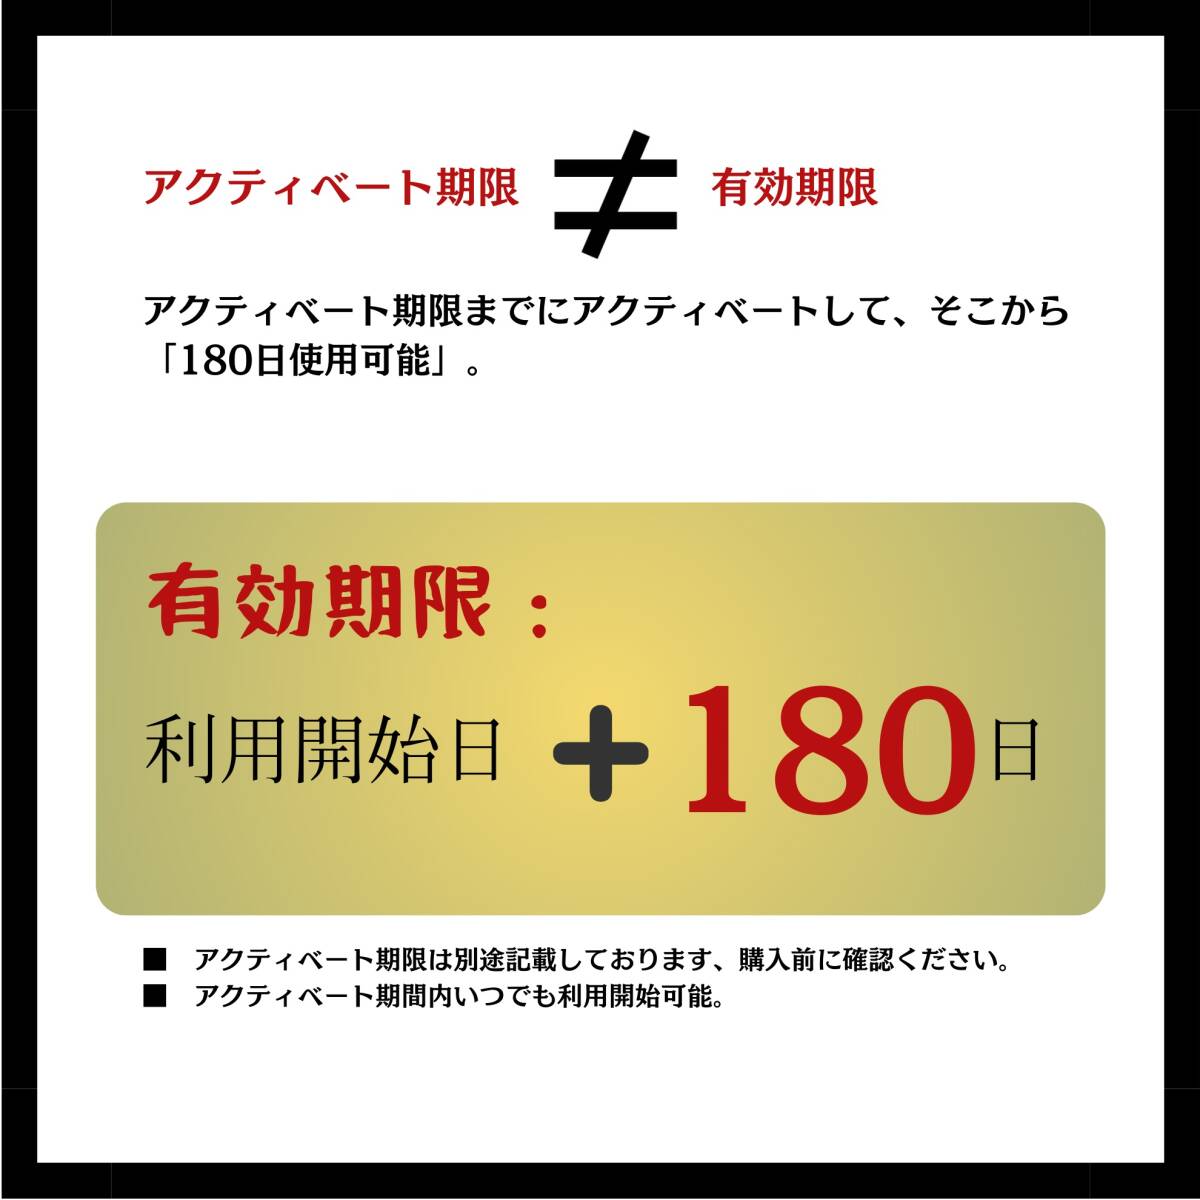 SIM for Japan Япония внутренний для 180 дней 15GB ( стандарт / микро / nano )3-in-1 docomo данные сообщение специальный 4G-LTE SIM карта /NTT DoCoMo сообщение сеть Sim 